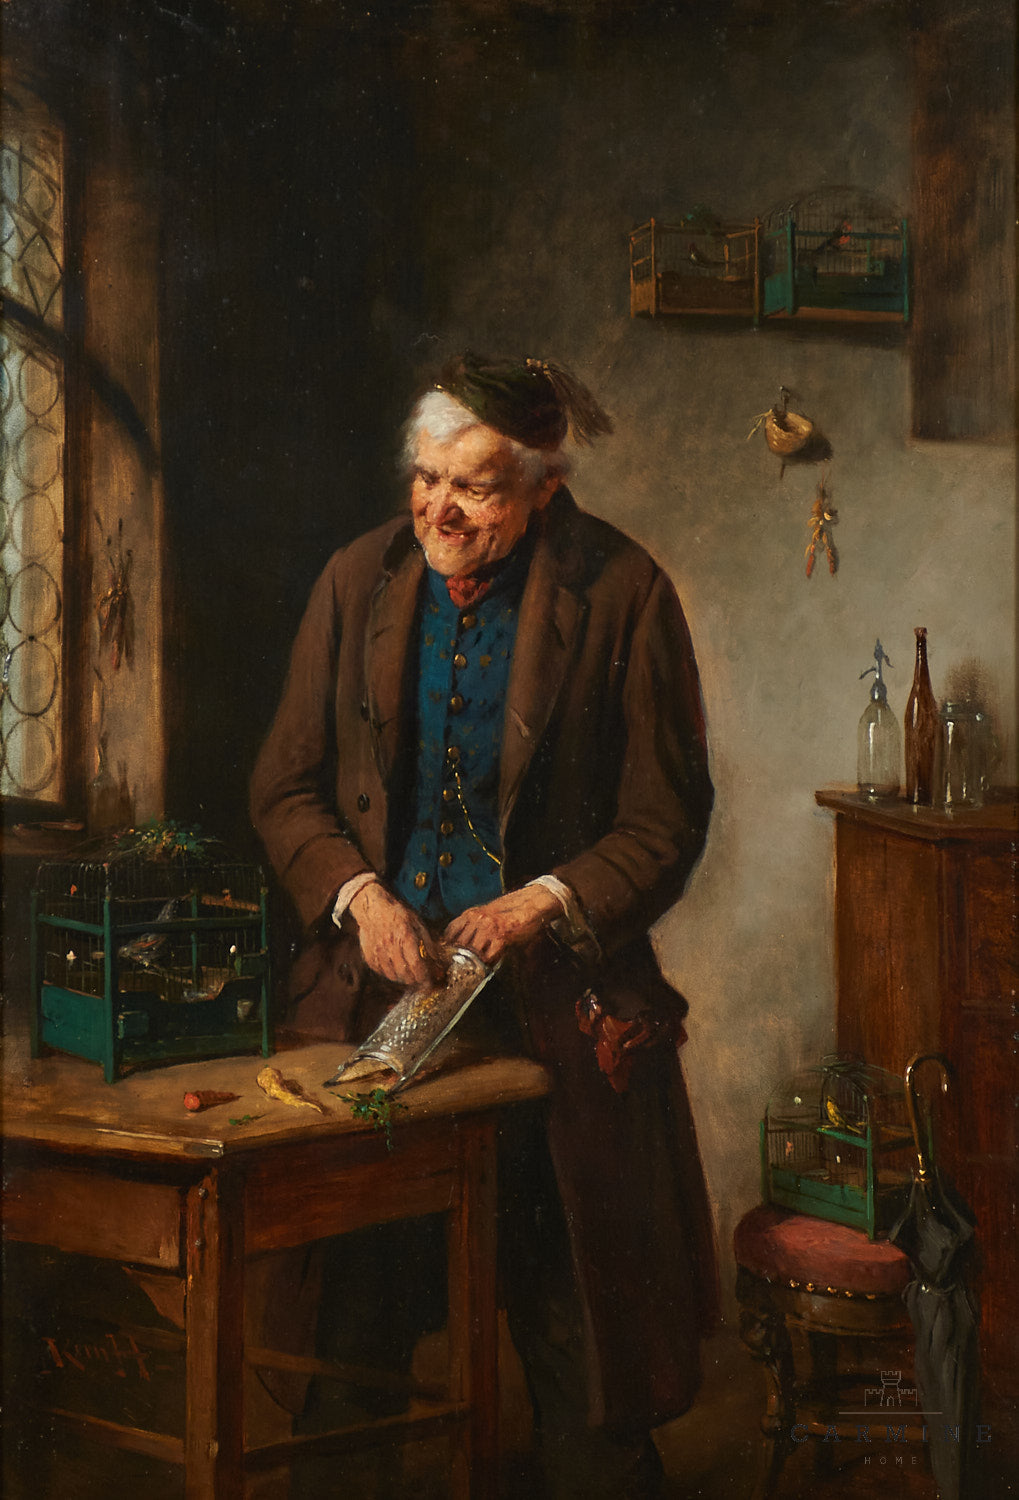 Kern, Hermann (1838-1912) “The Bird Dealer”